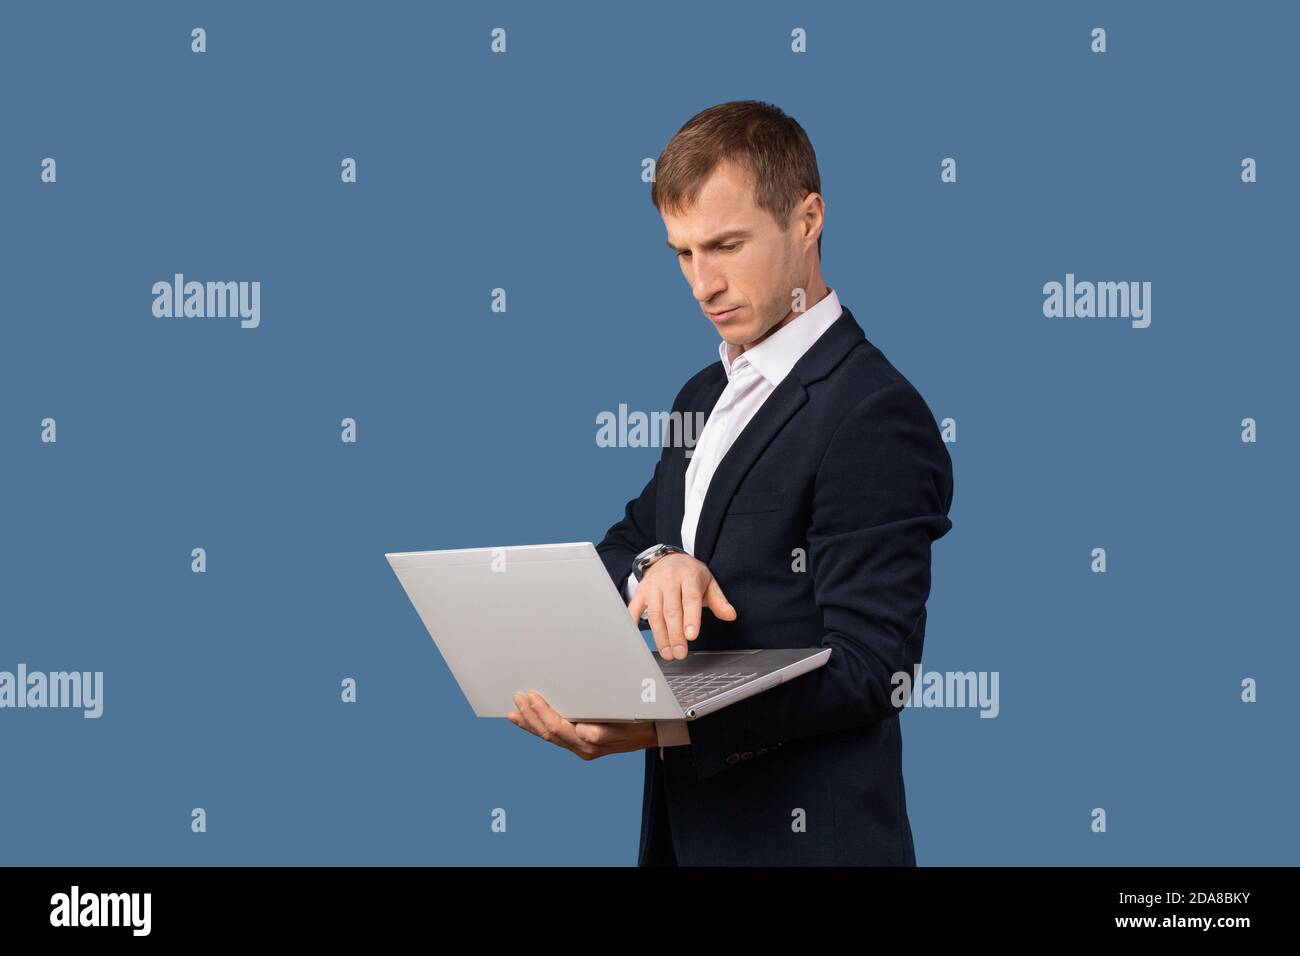 Un uomo d'affari in un vestito da lavoro guarda un laptop sul peso nelle sue mani. Studio shot concetto di lavoro remoto senza ufficio su sfondo blu Foto Stock